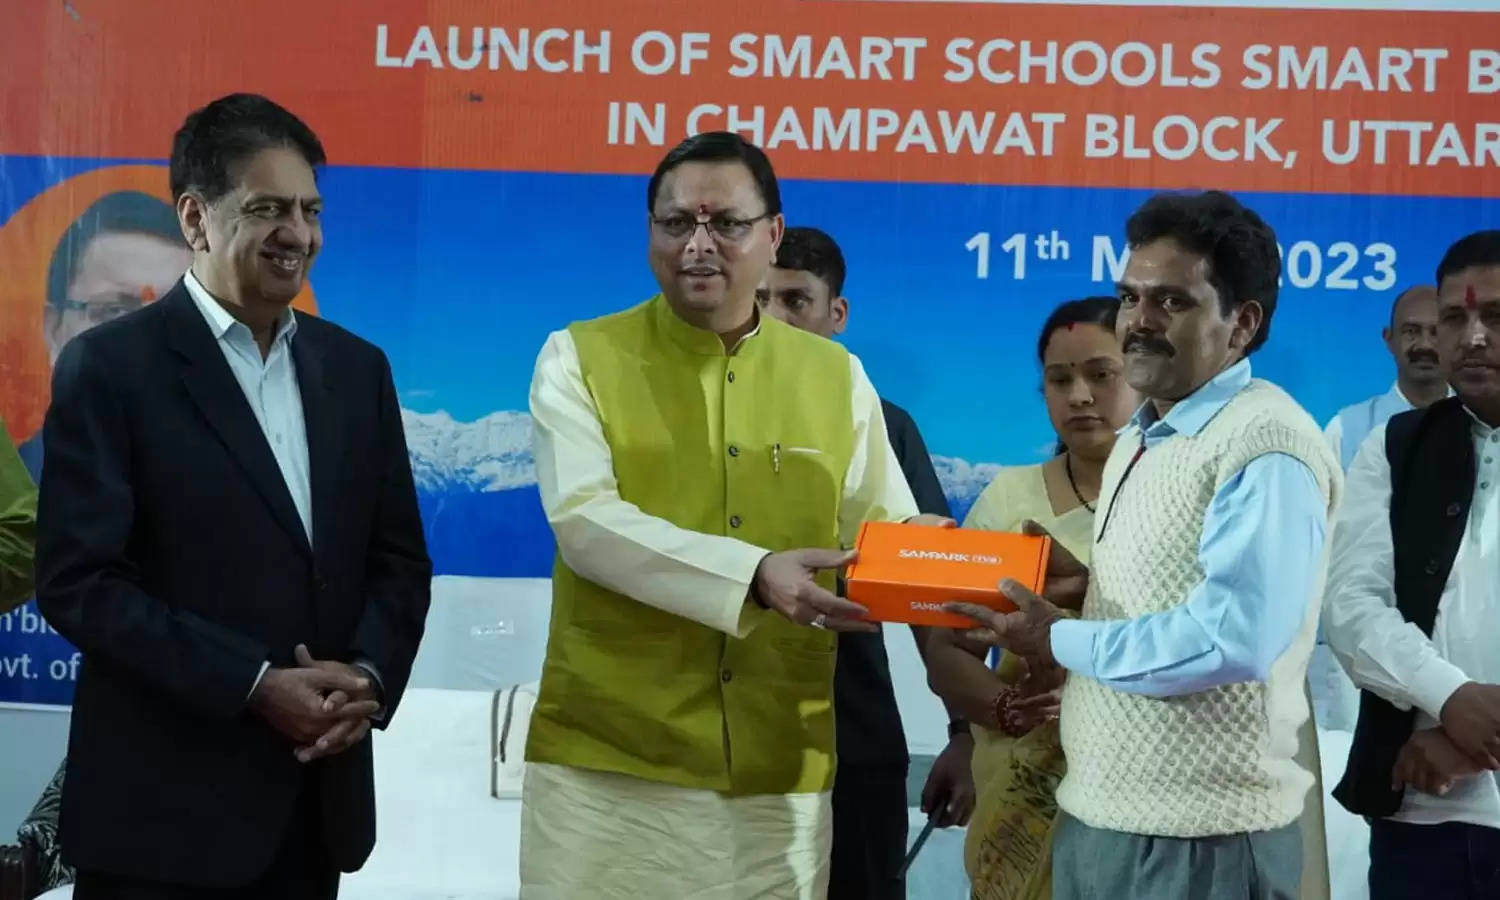 मुख्यमंत्री ने किया स्मार्ट स्कूल-स्मार्ट ब्लॉक कार्यक्रम का शुभारंभ, विद्यालयों में होगी अब स्मार्ट कक्षाएं संचालित